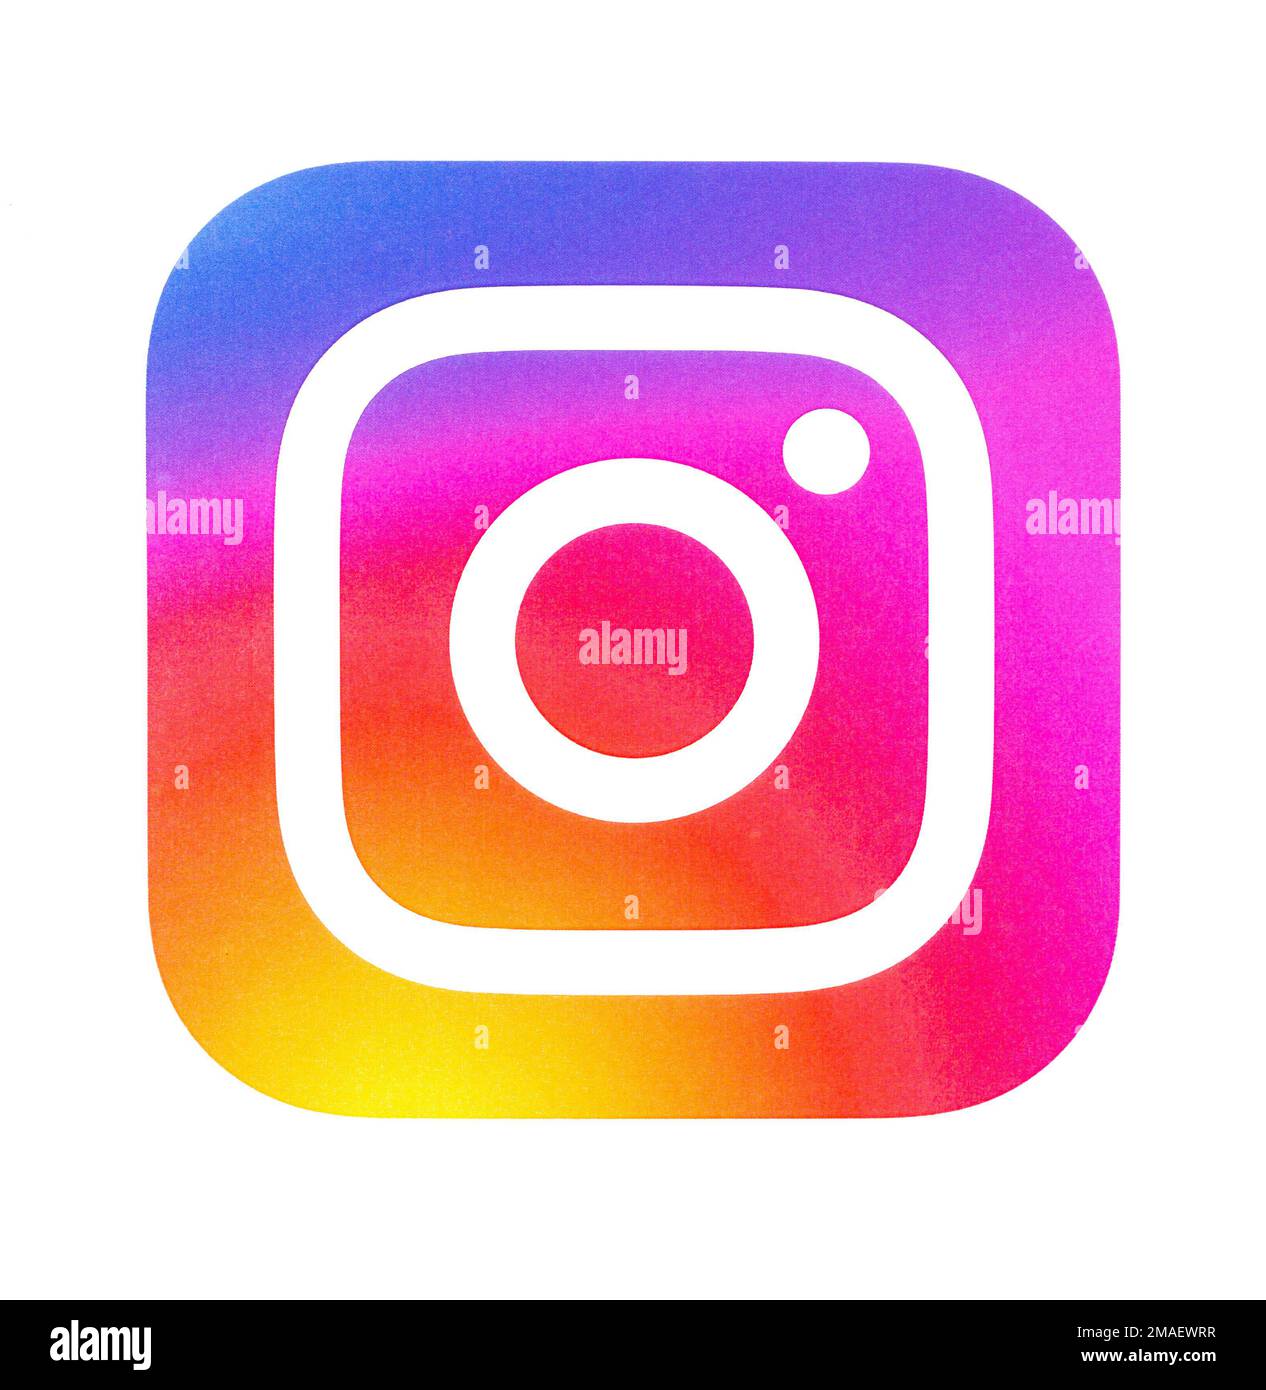 Chisinau, Moldova 19 settembre 2018: Nuovo logo Instagram stampato su carta bianca. Instagram è un servizio online di condivisione di foto e video per dispositivi mobili. Foto Stock